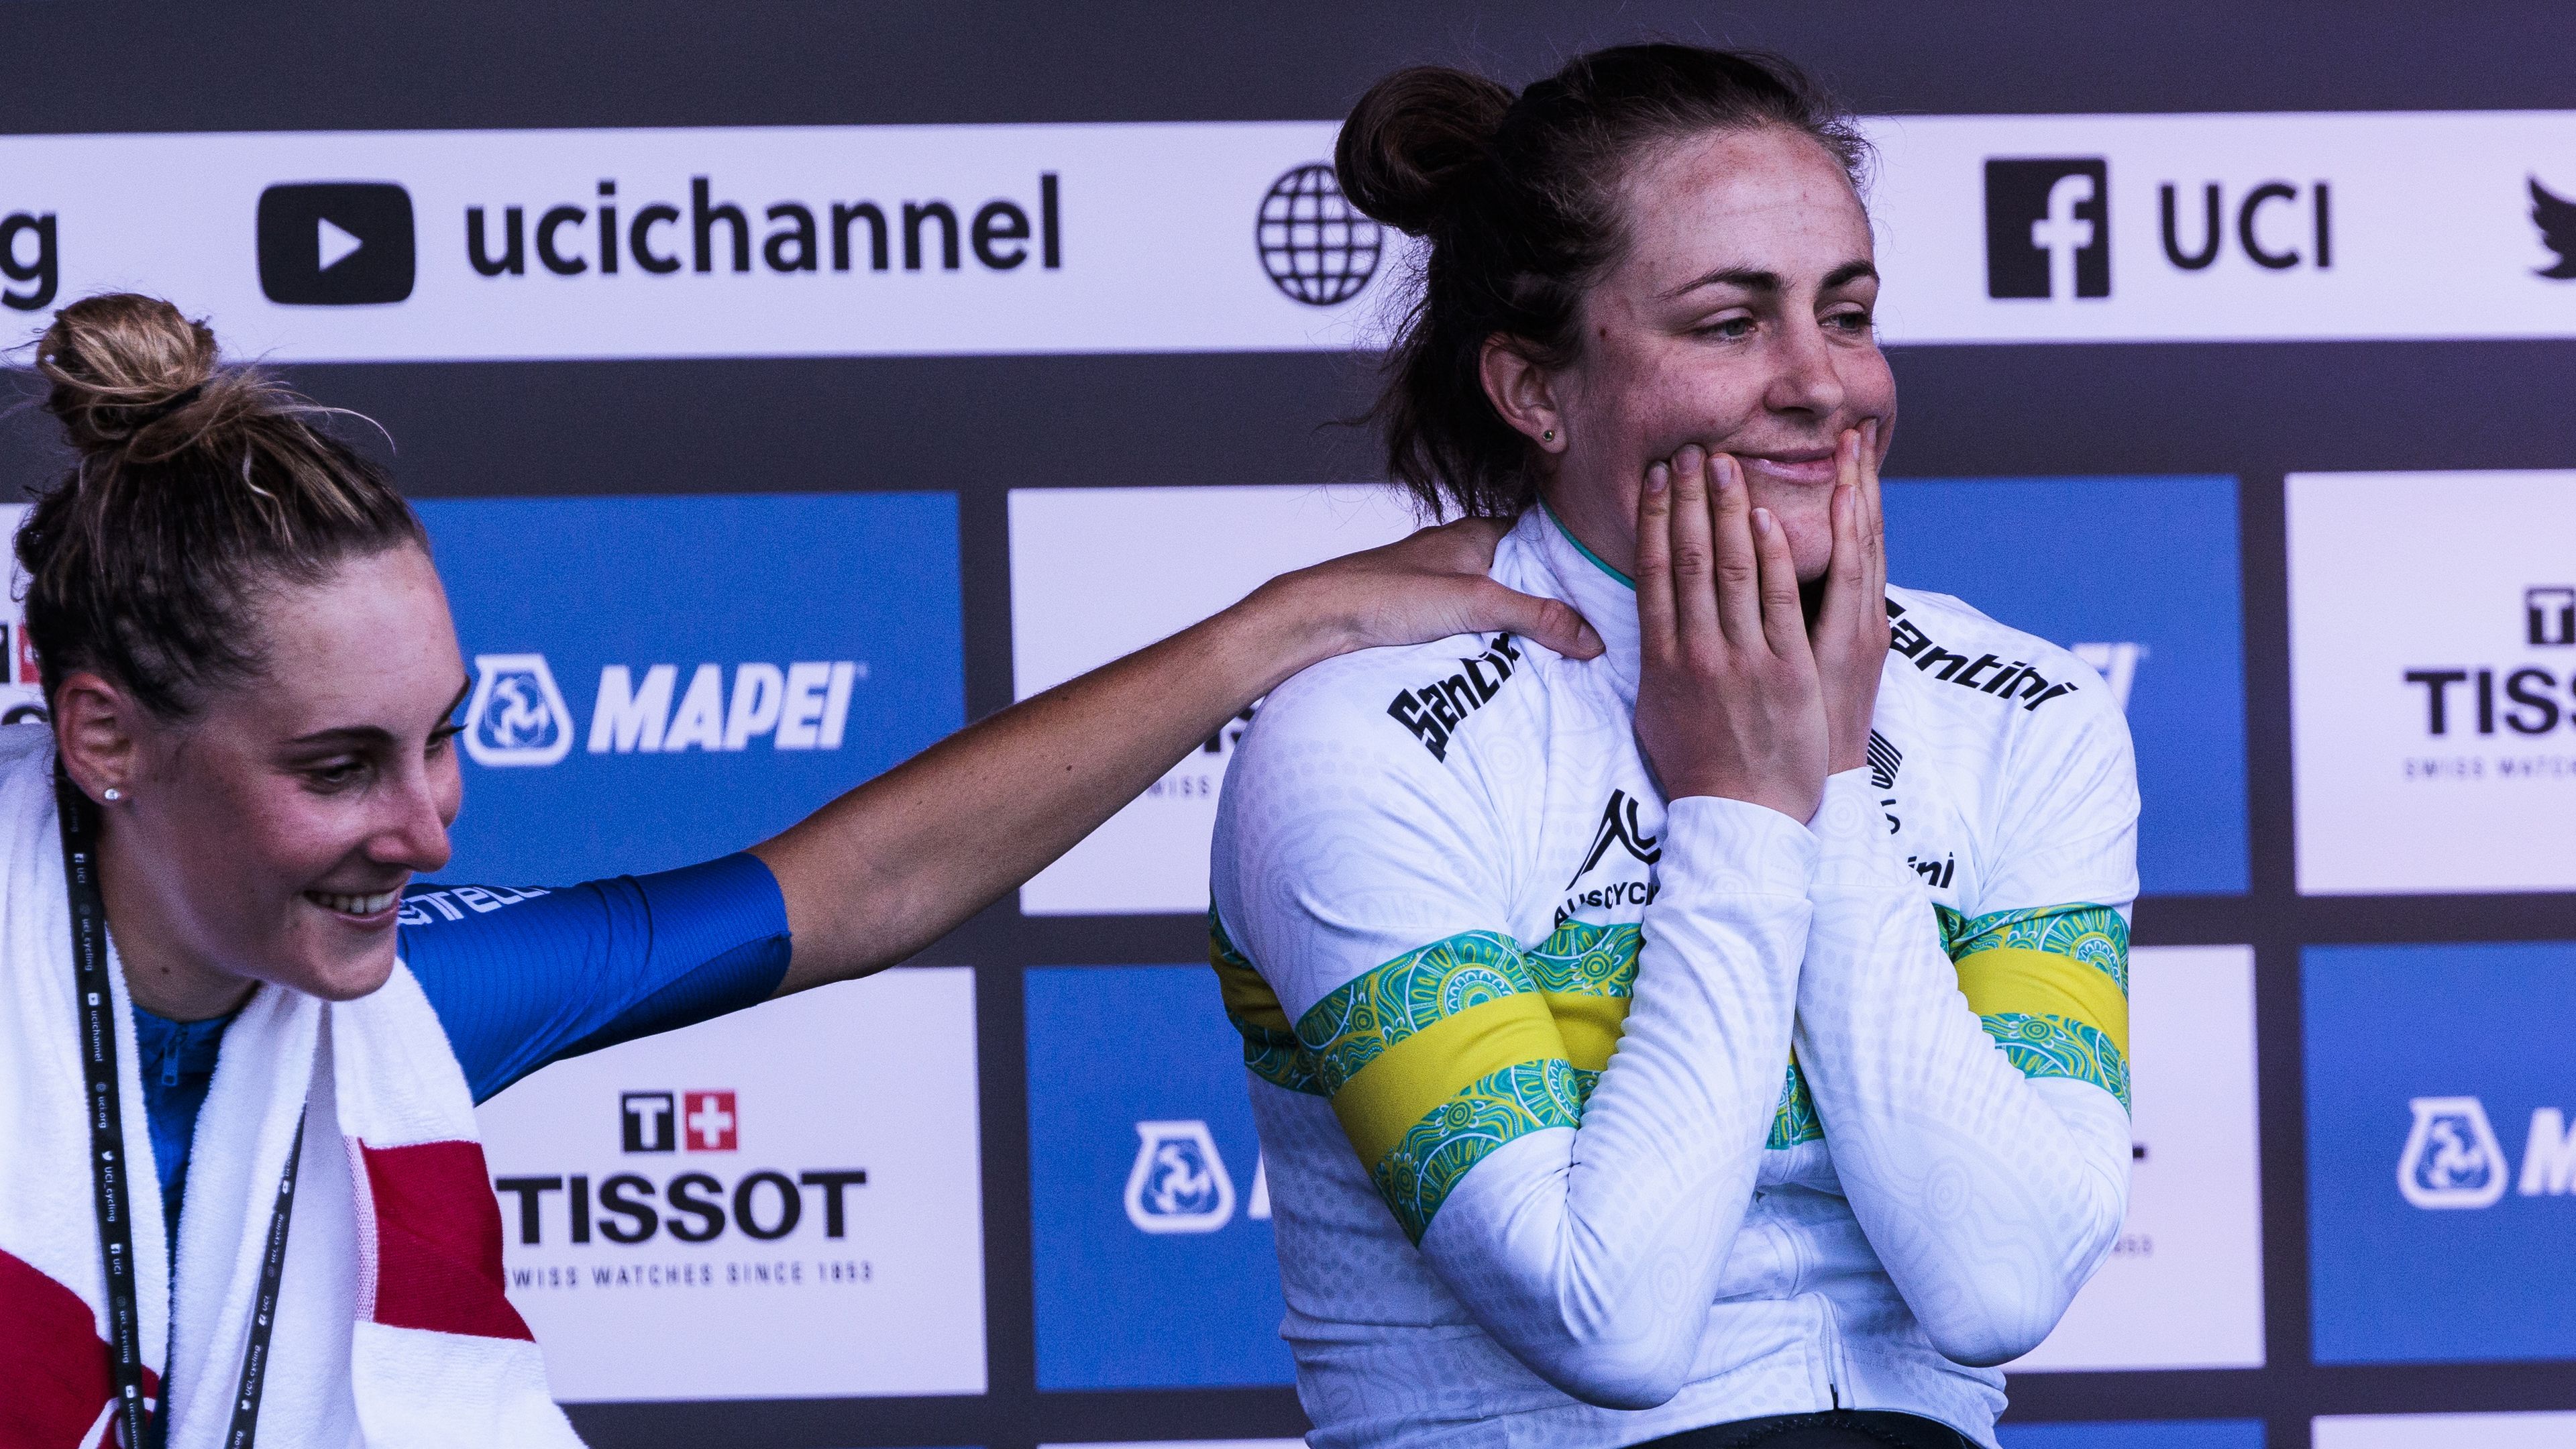 Australian rider Grace Brown waits nervously as Dutch cyclist Ellen van Dijk pips her for gold.